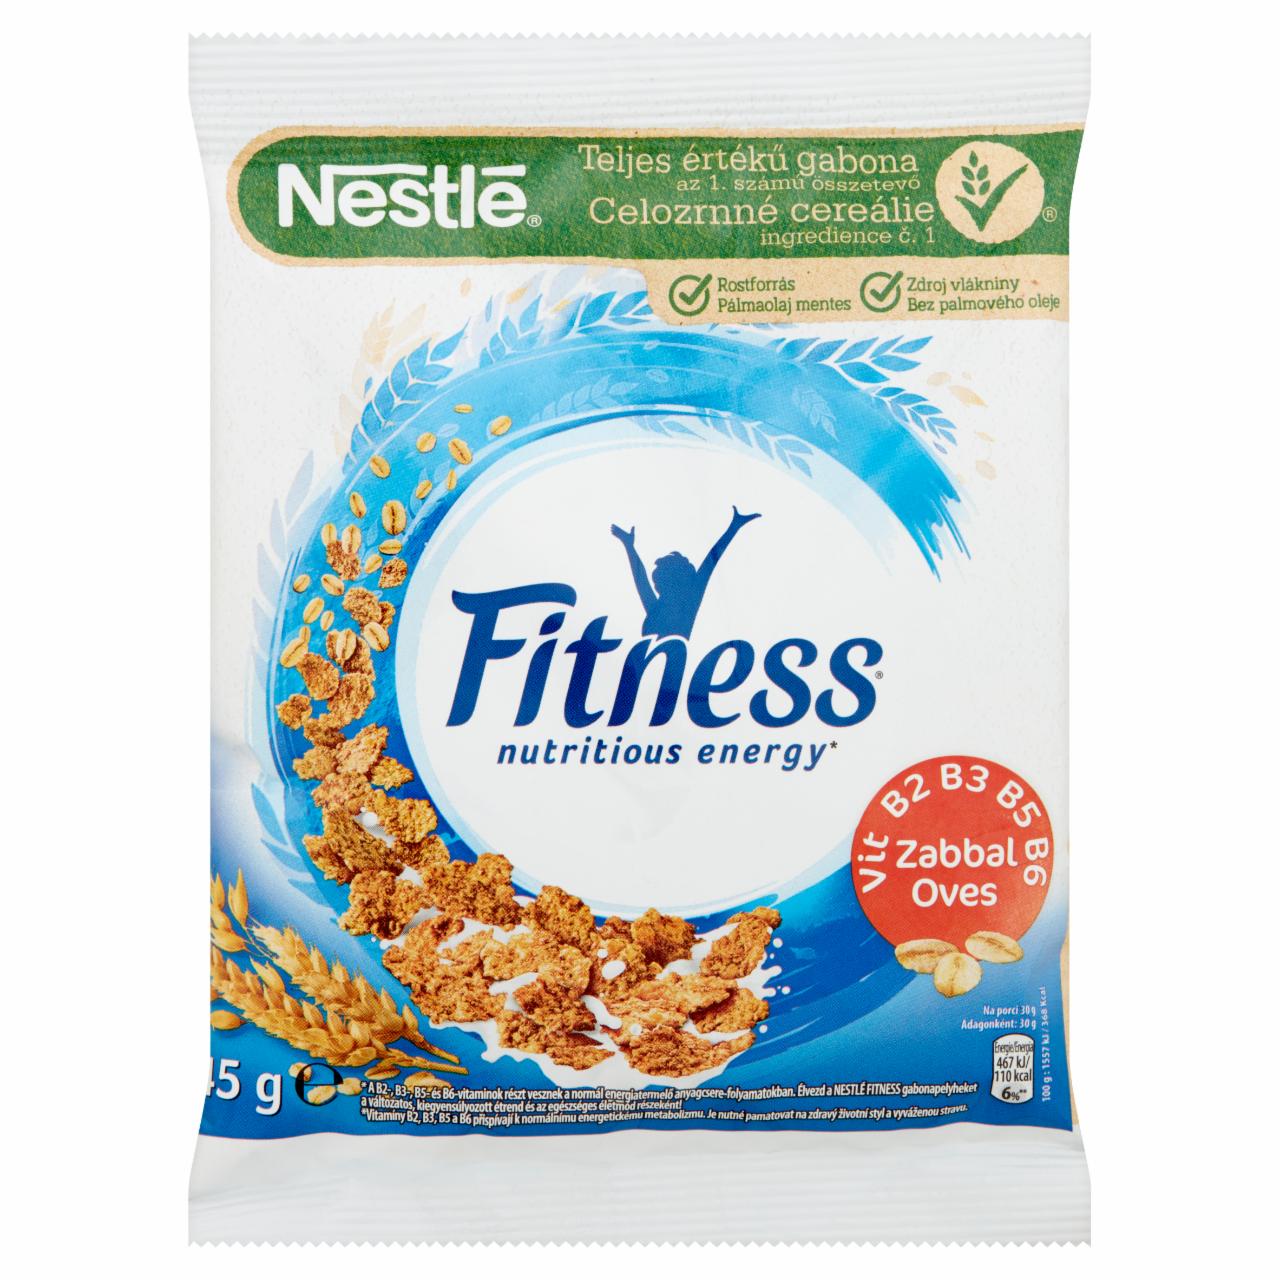 Képek - Nestlé Fitness gabonapehely teljes értékű búzával és zabbal, vitaminokkal és ásványi anyagokkal 45 g